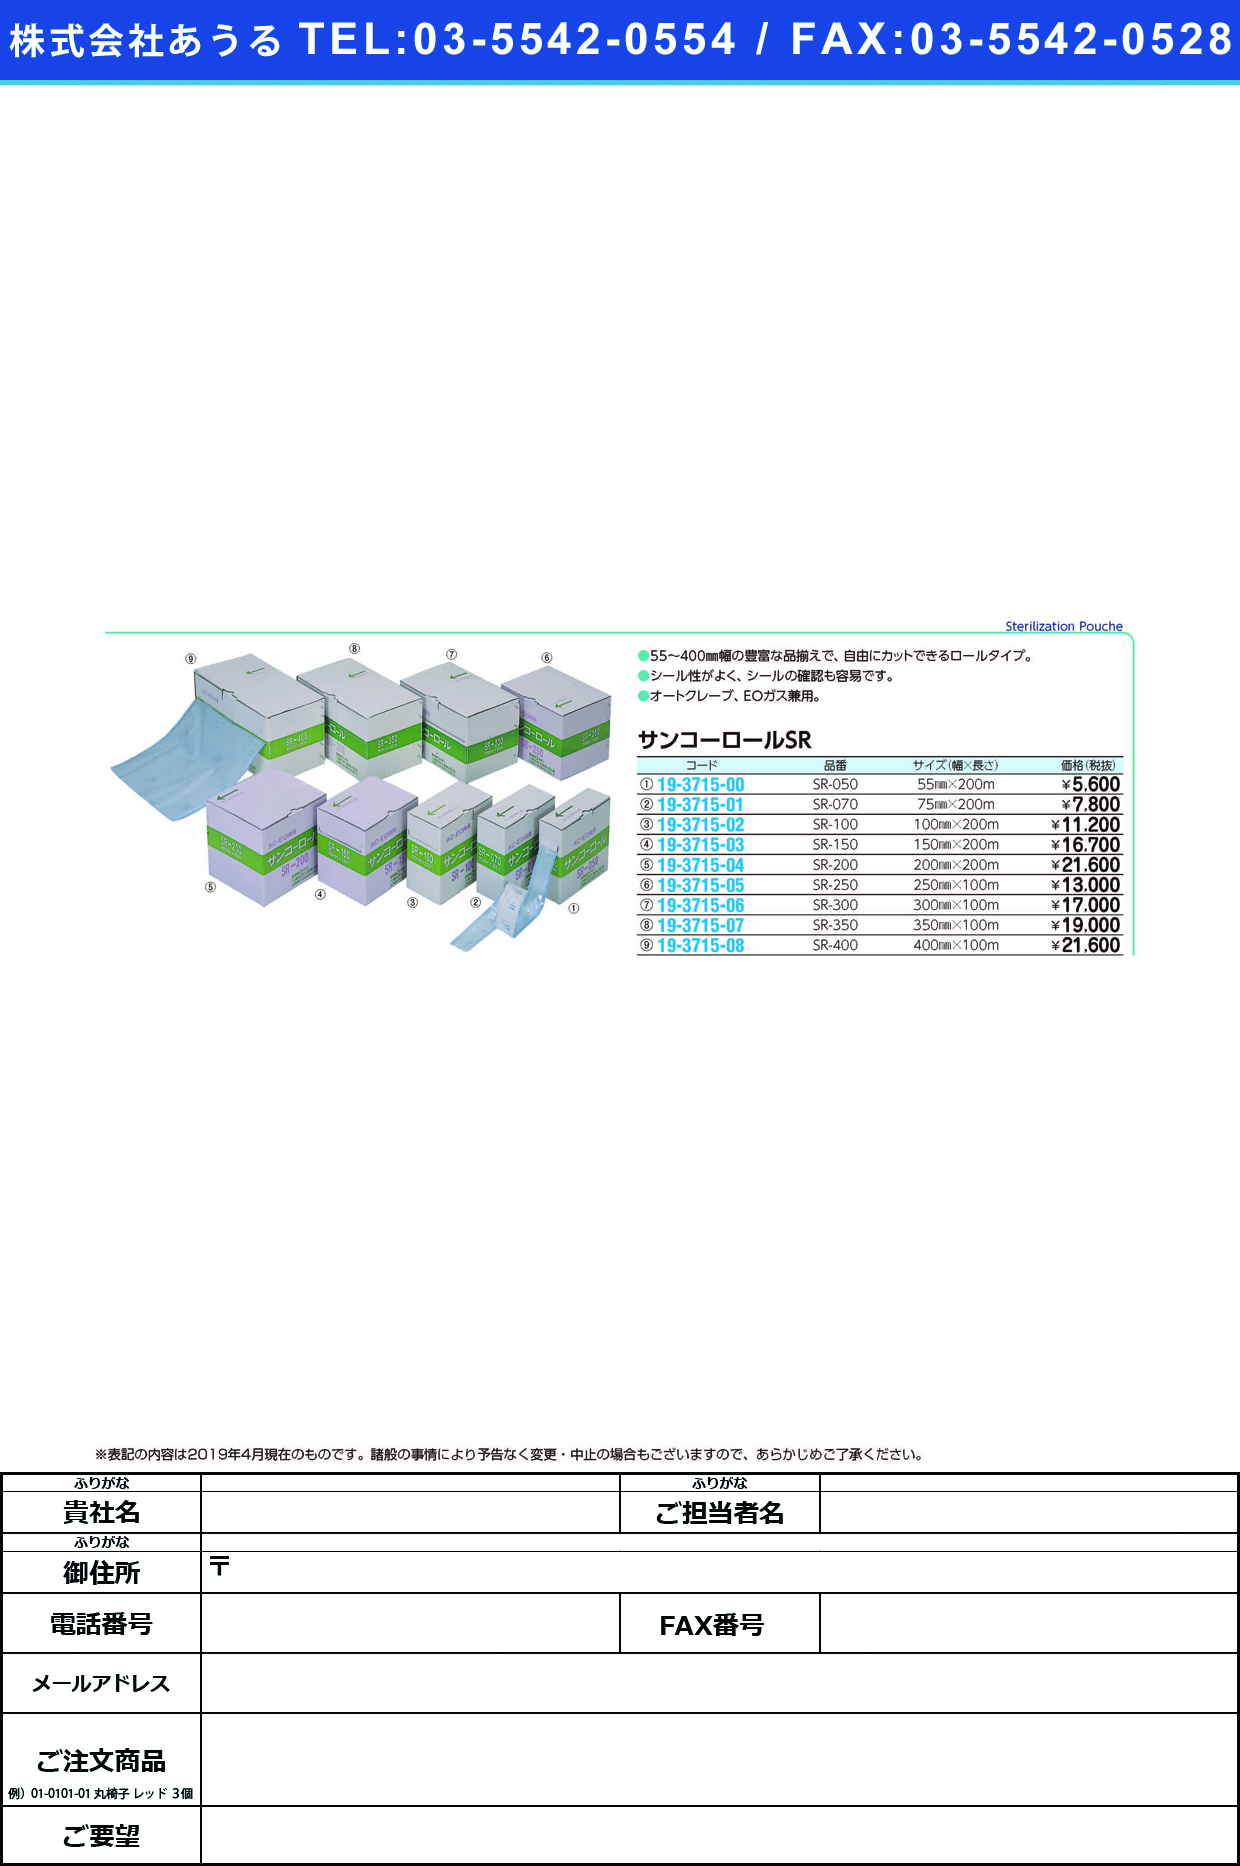 (19-3715-04)サンコーロール SR-200(200MMX200M) ｻﾝｺｰﾛｰﾙ(三興化学工業)【1巻単位】【2019年カタログ商品】